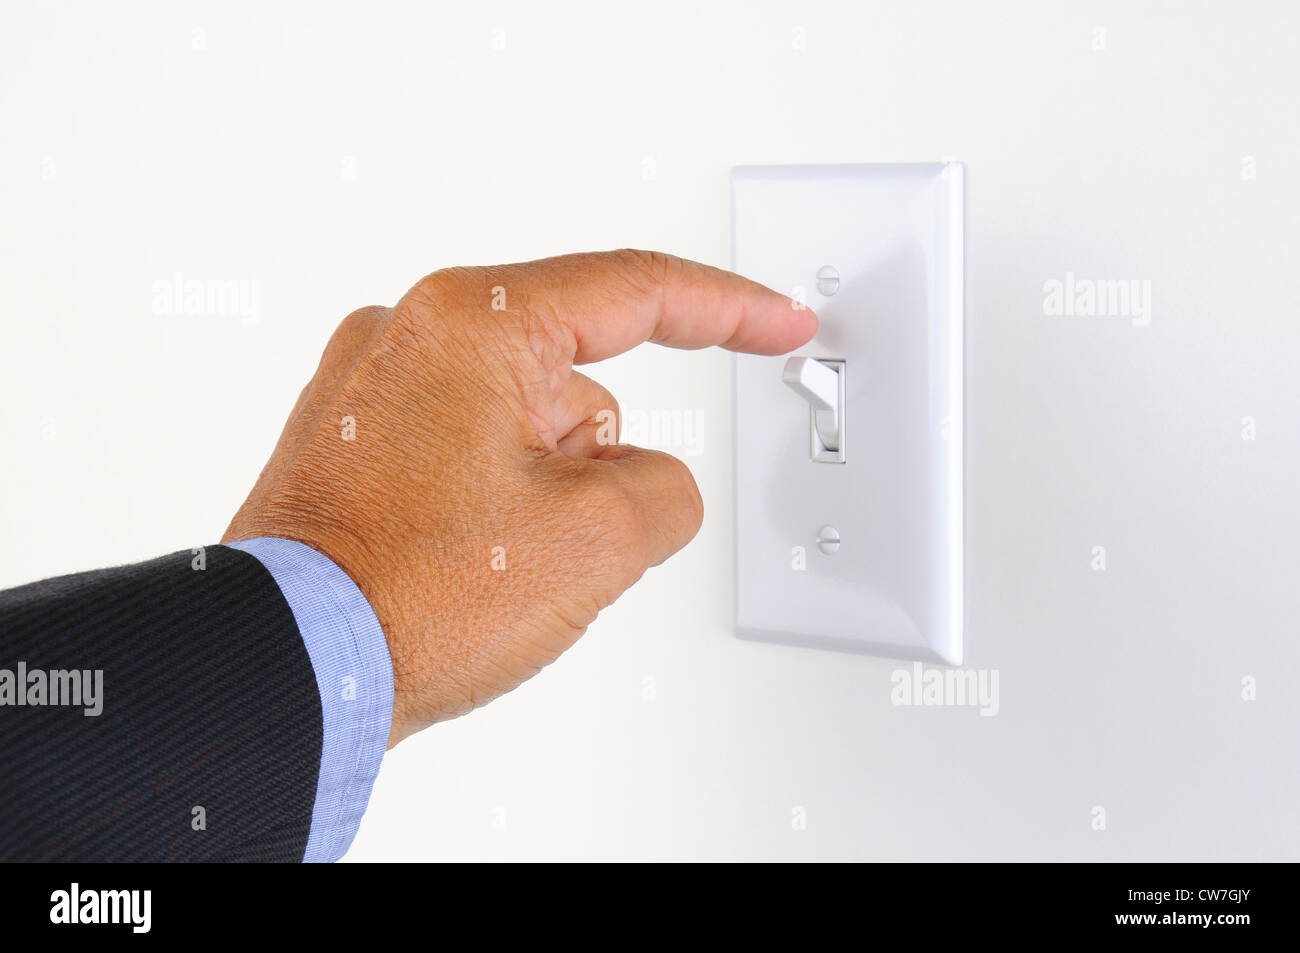 La main de l'homme avec le doigt sur l'interrupteur d'éclairage, sur le point d'éteindre les lumières. Libre de part et de l'interrupteur seulement. Format horizontal. Banque D'Images